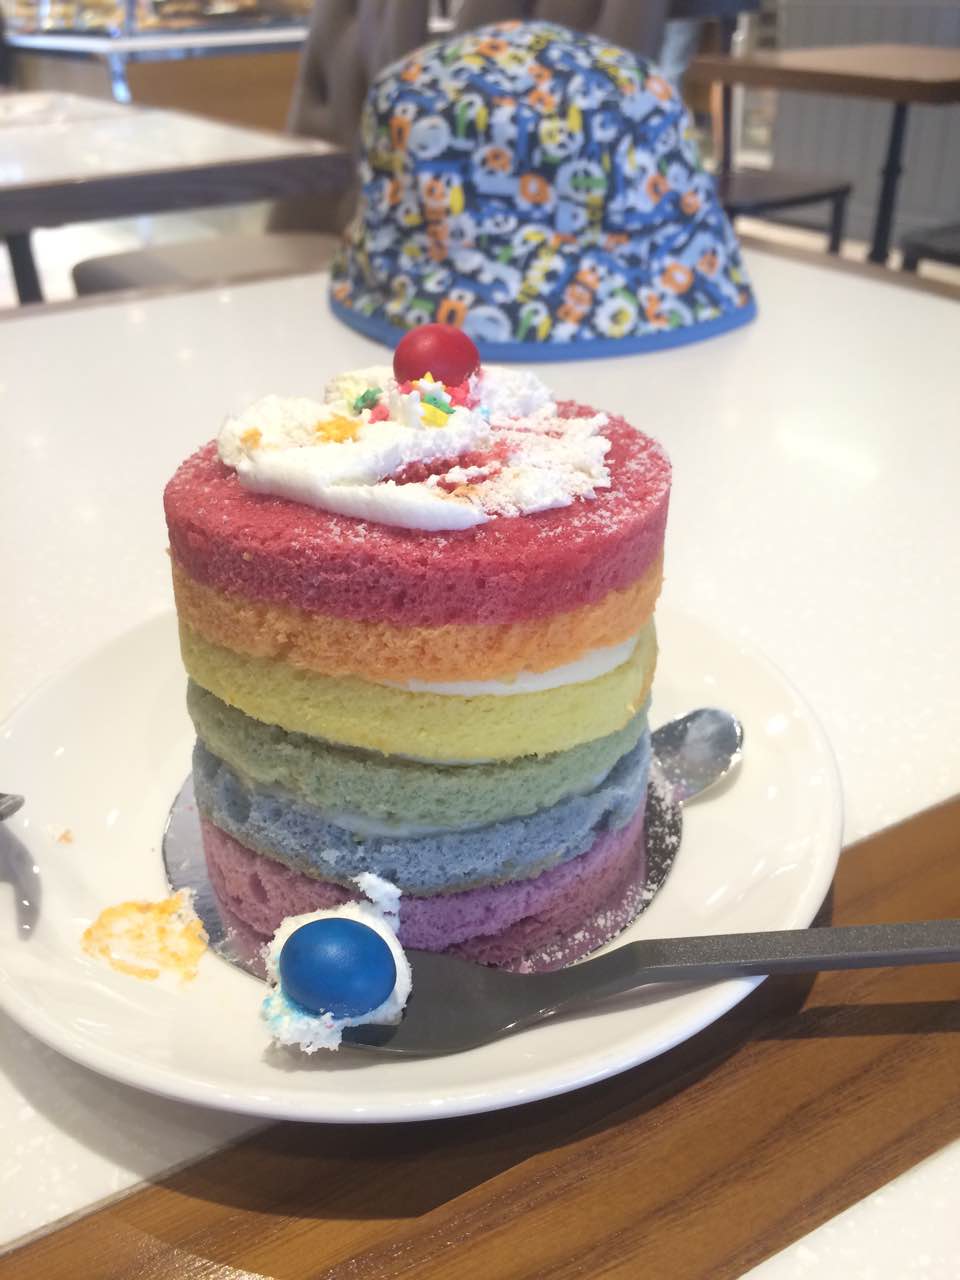 2022巴黎贝甜(常熟印象城店)美食餐厅,种类很多,彩虹蛋糕挺甜的,